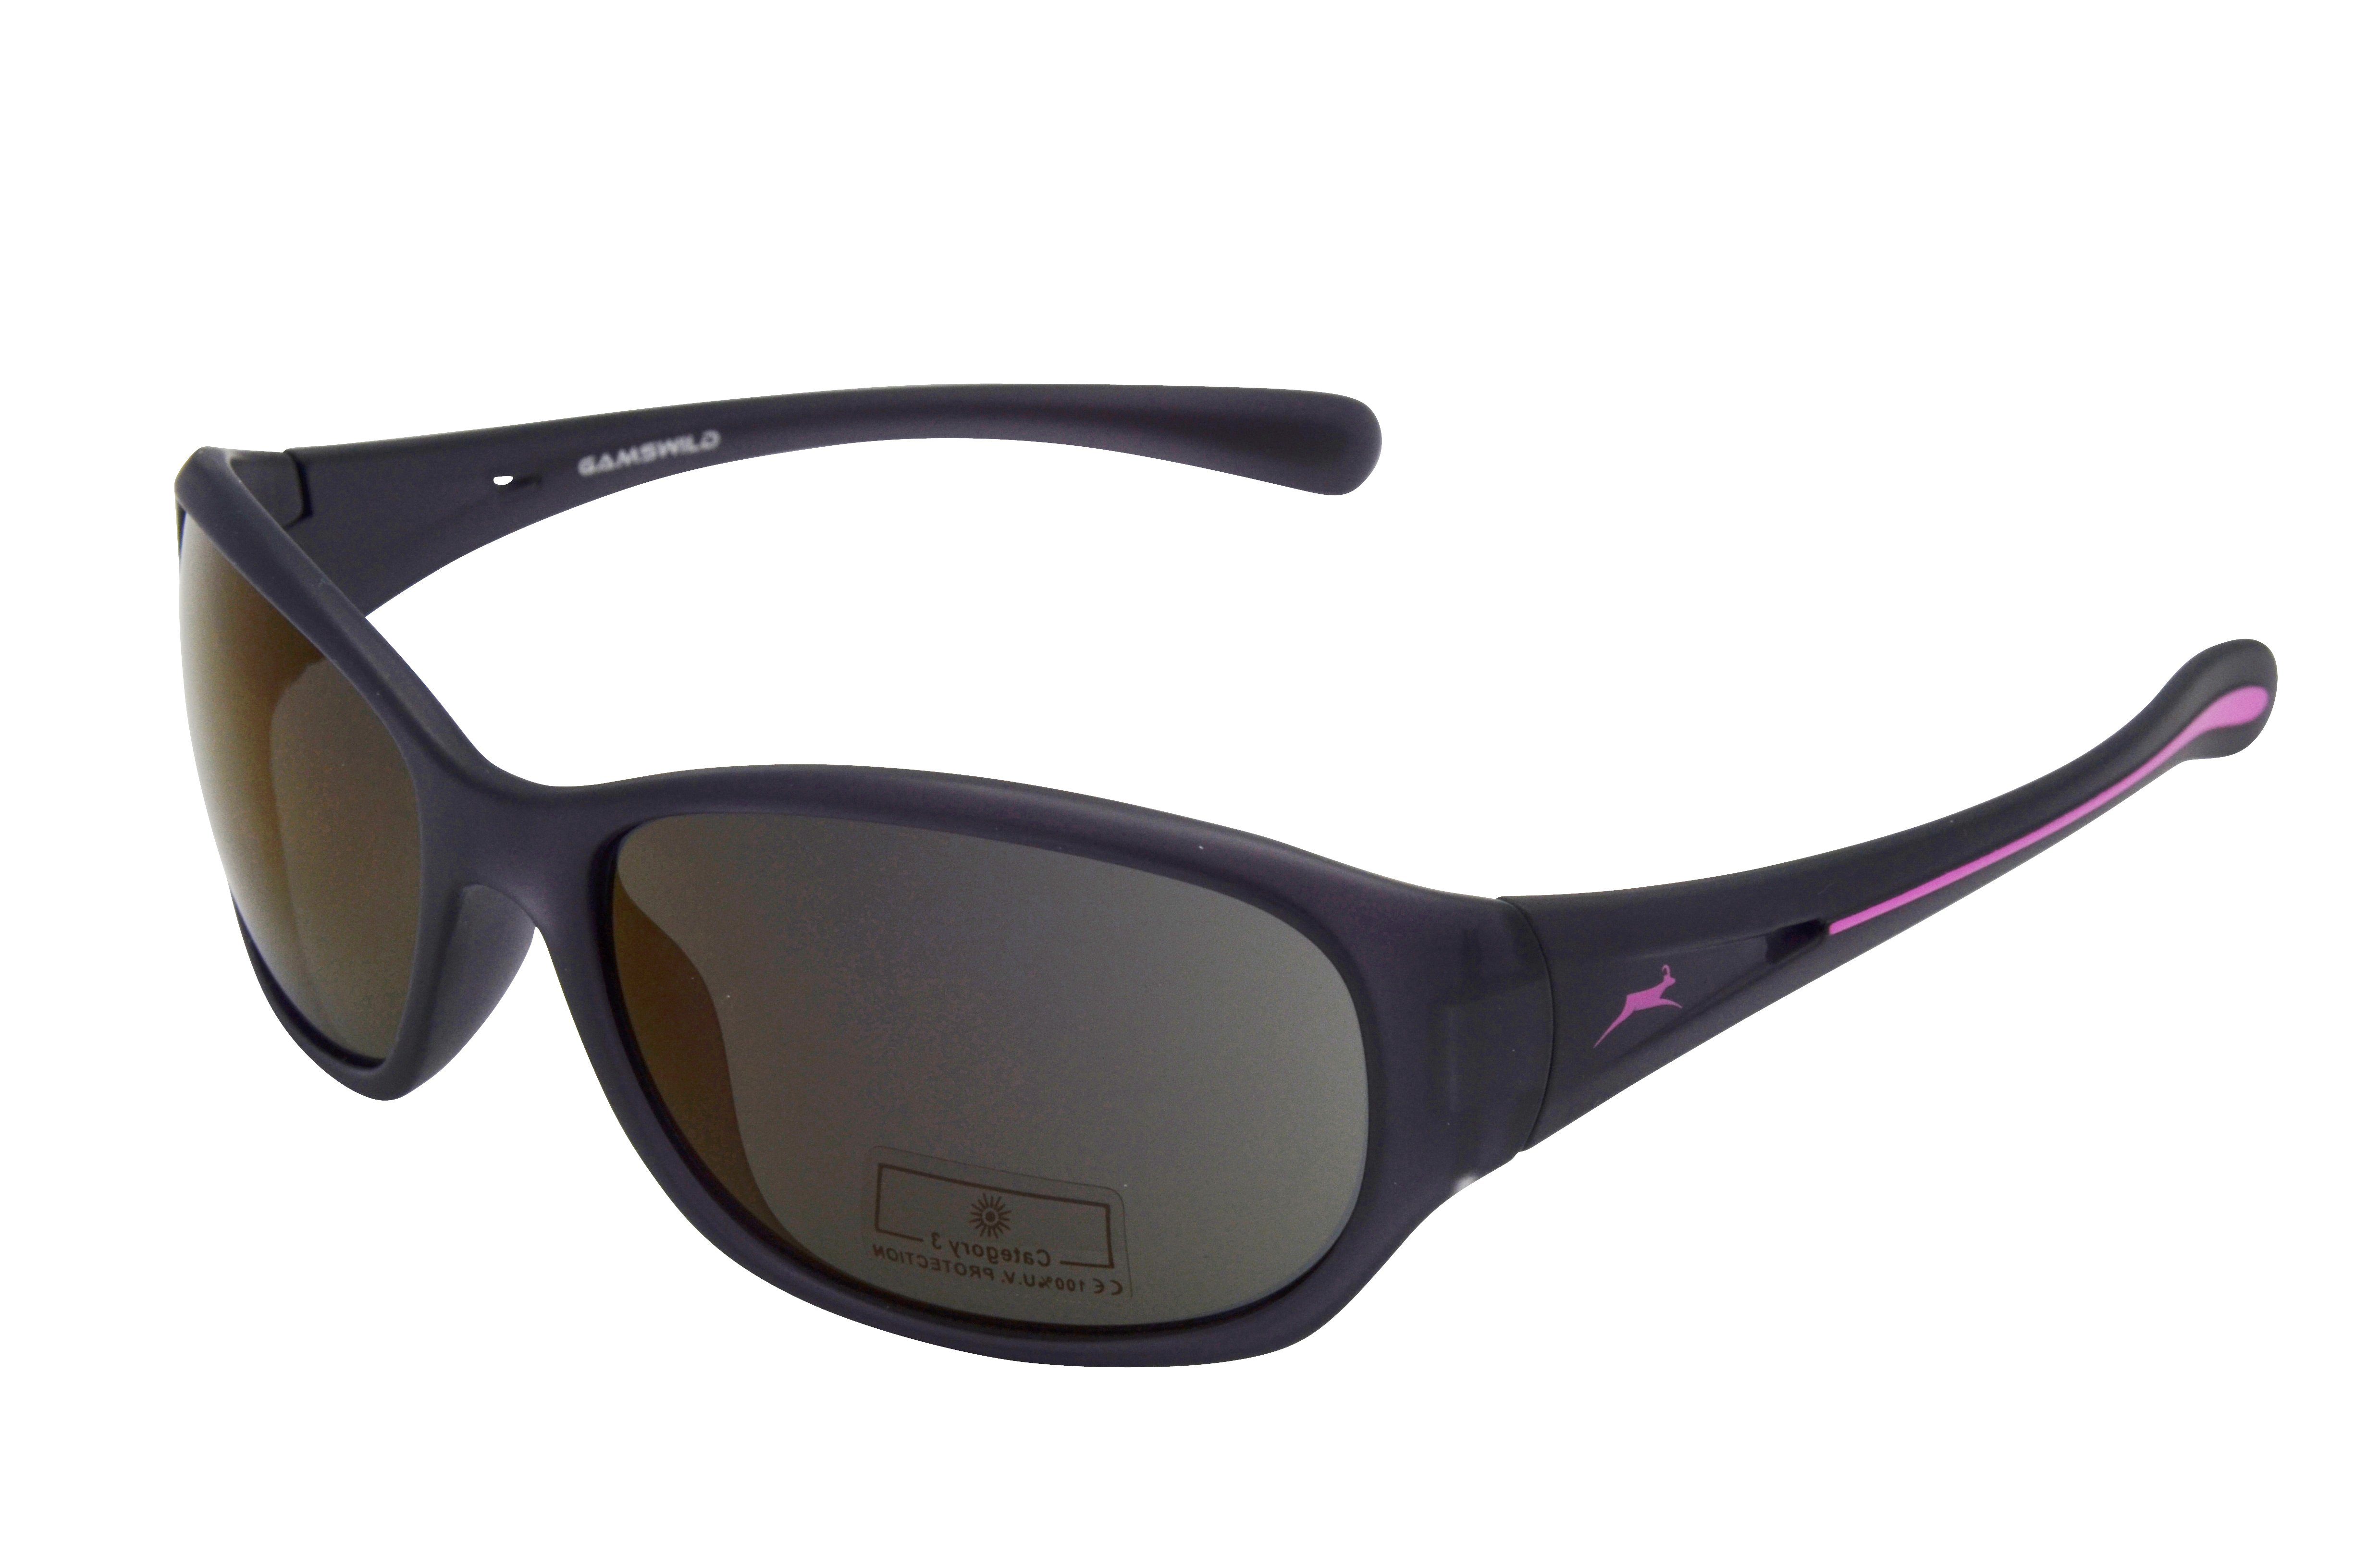 Gamswild Sonnenbrille »WS2424 Damenbrille Sportbrille Skibrille  Fahrradbrille, schwarz-pink, braun-grün, schwarz-blau« schmal geschnittenes  Damenmodell online kaufen | OTTO